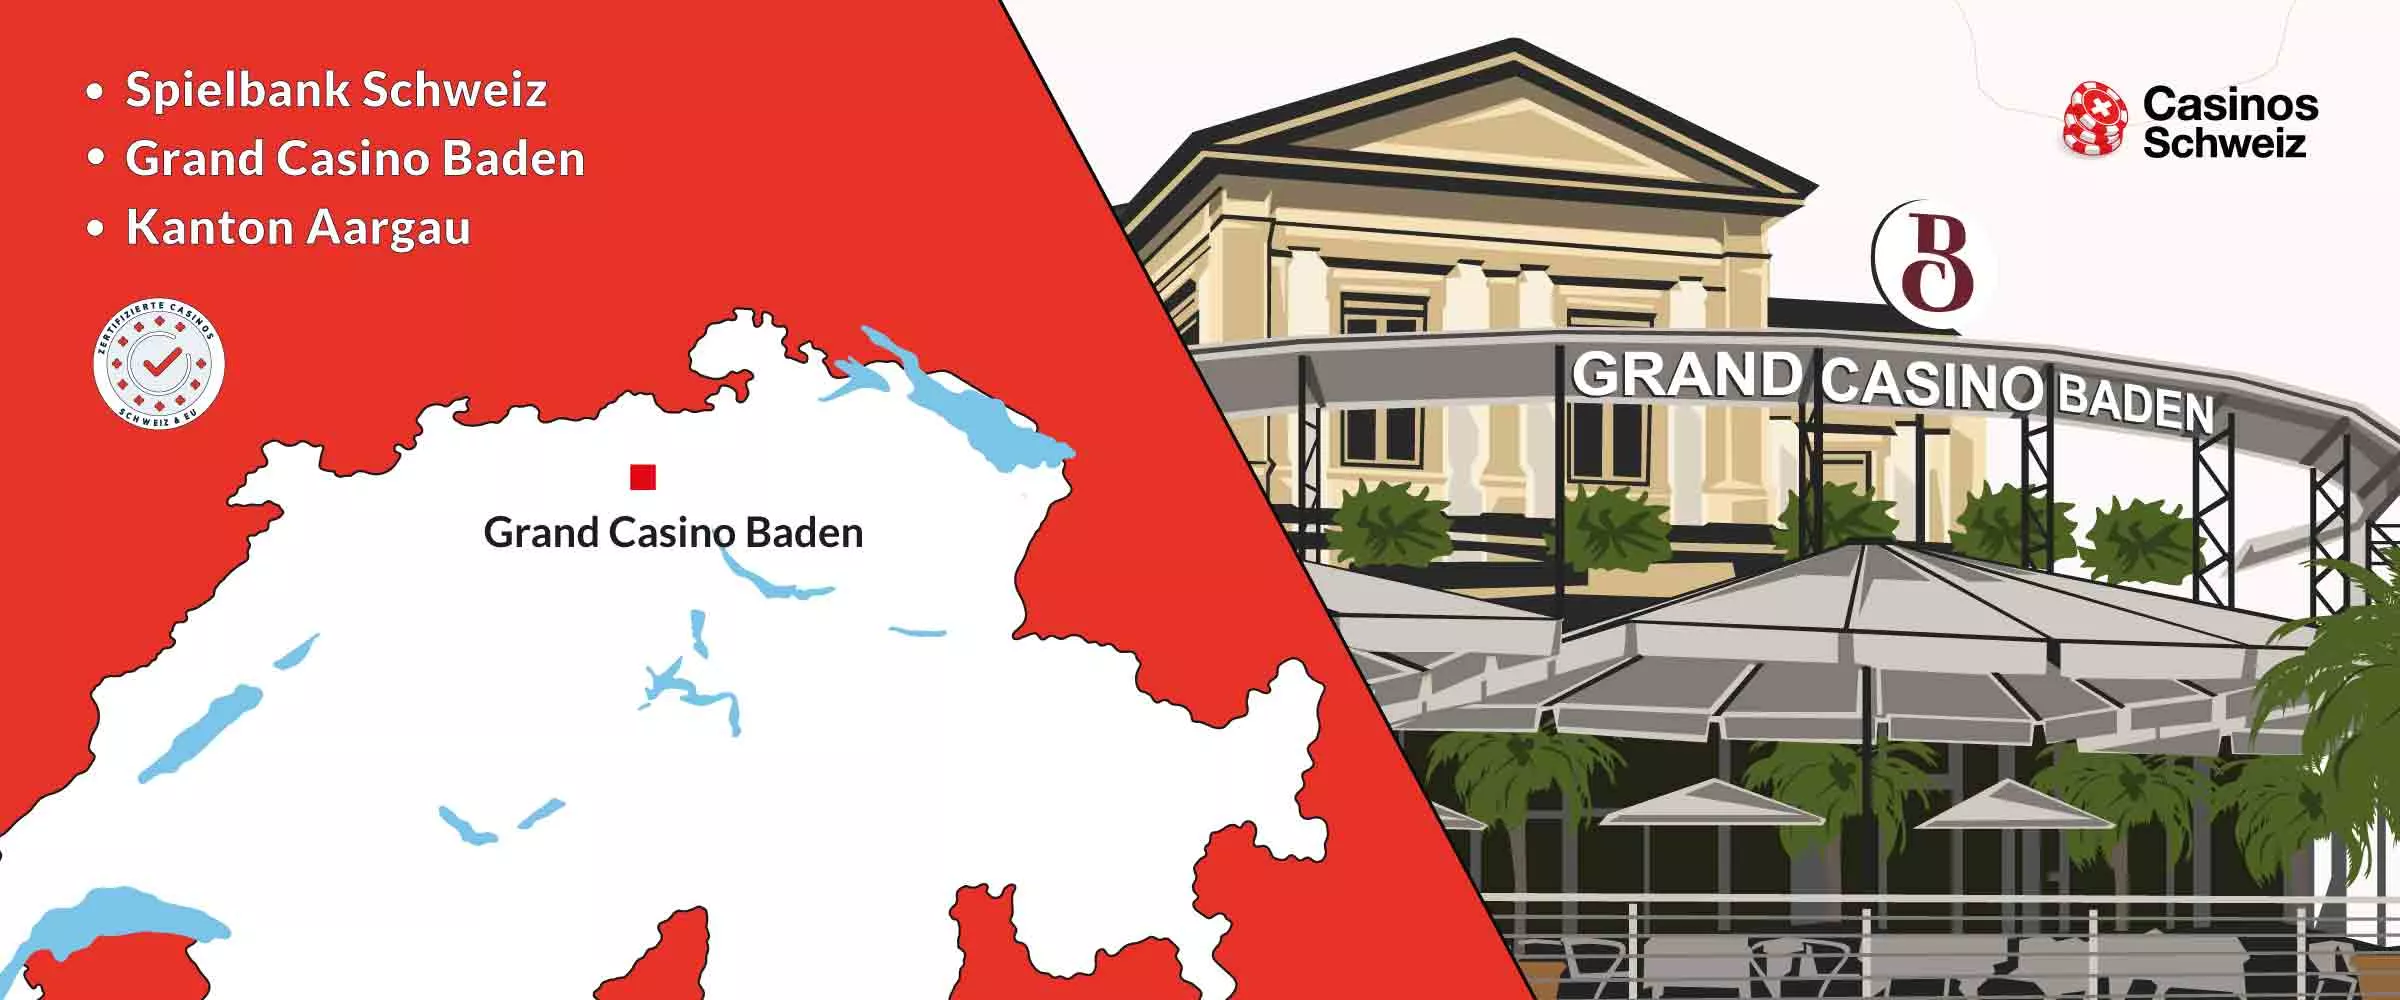 Grand Casino Baden Spielbank Schweiz Standort